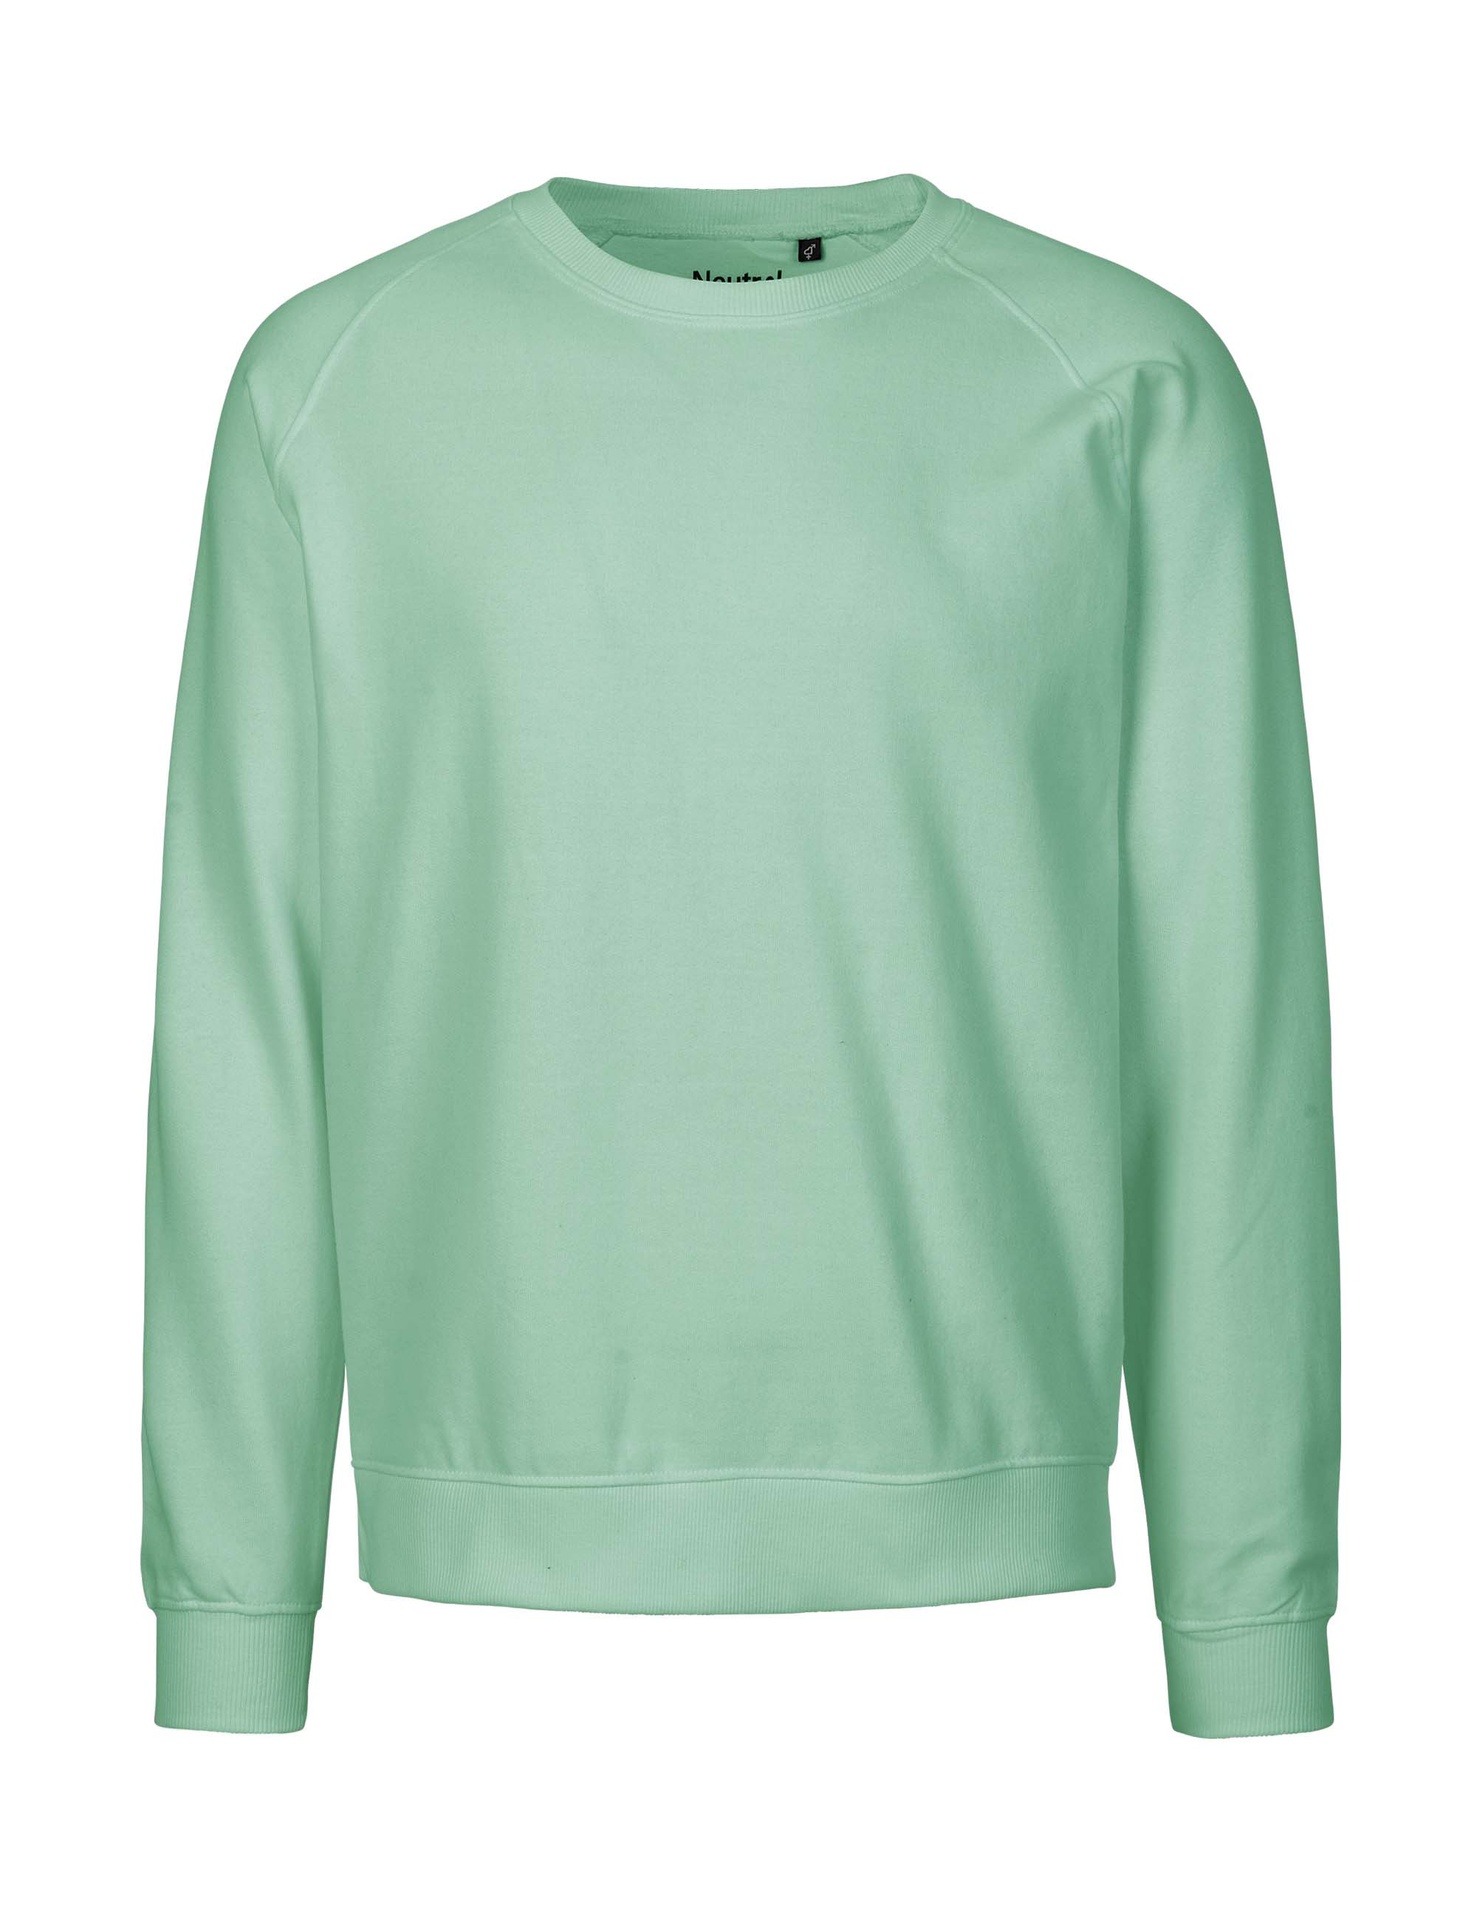 [PR/02828] Unisex Sweatshirt (Dusty Mint 40, 2XL)